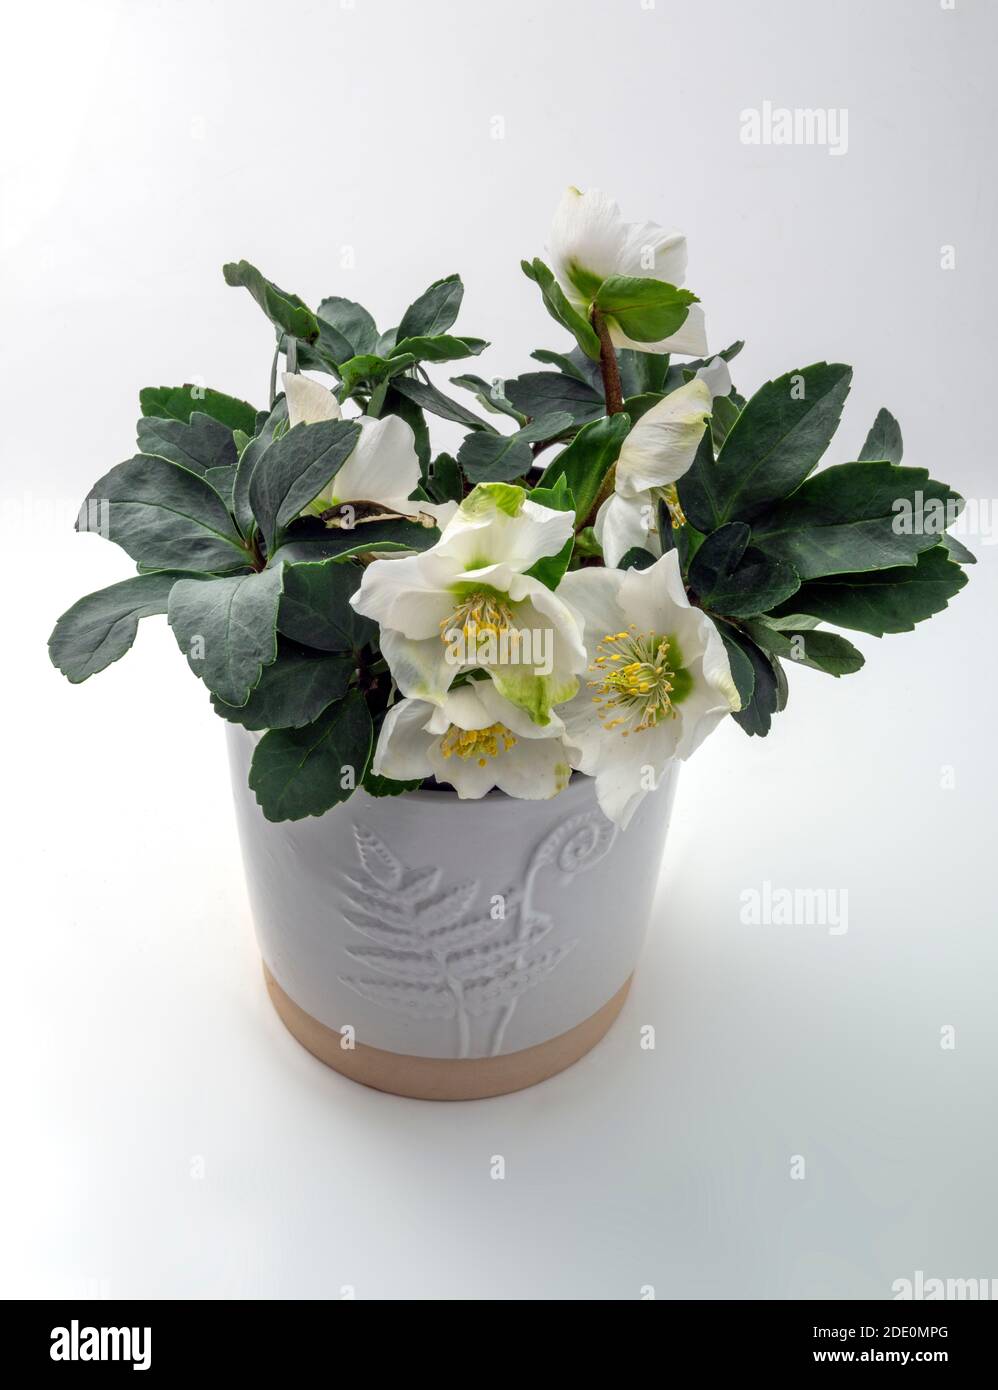 Helleborus niger o natale rosa un inverno o natale fioritura pianta giardino fotografato in studio, Regno Unito Foto Stock